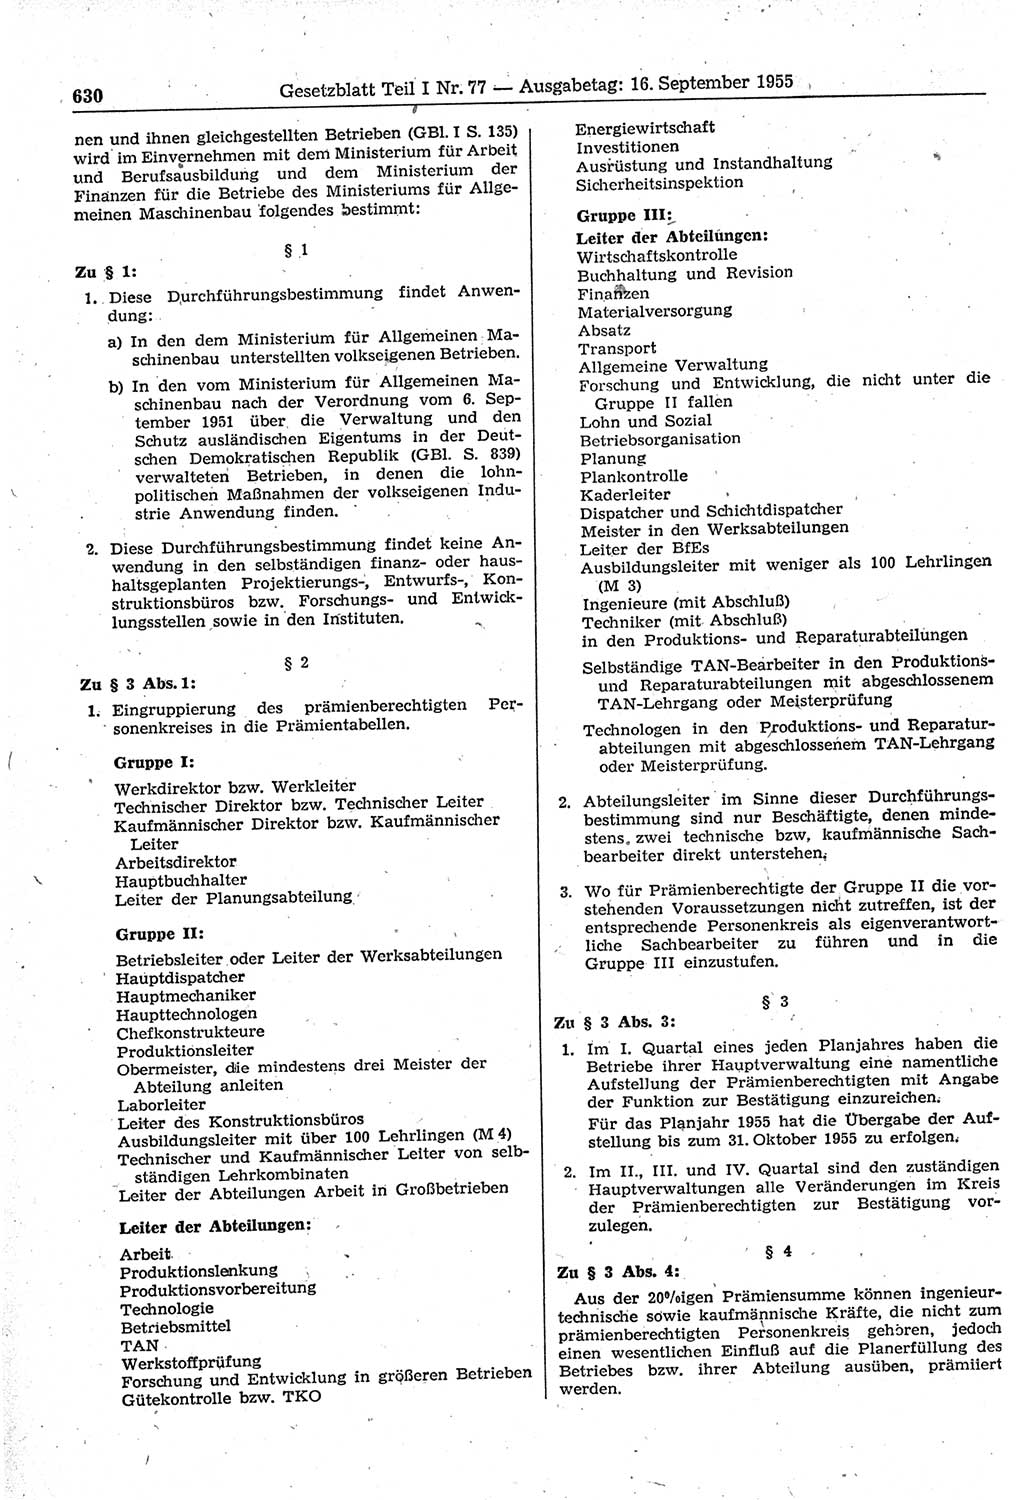 Gesetzblatt (GBl.) der Deutschen Demokratischen Republik (DDR) Teil Ⅰ 1955, Seite 630 (GBl. DDR Ⅰ 1955, S. 630)